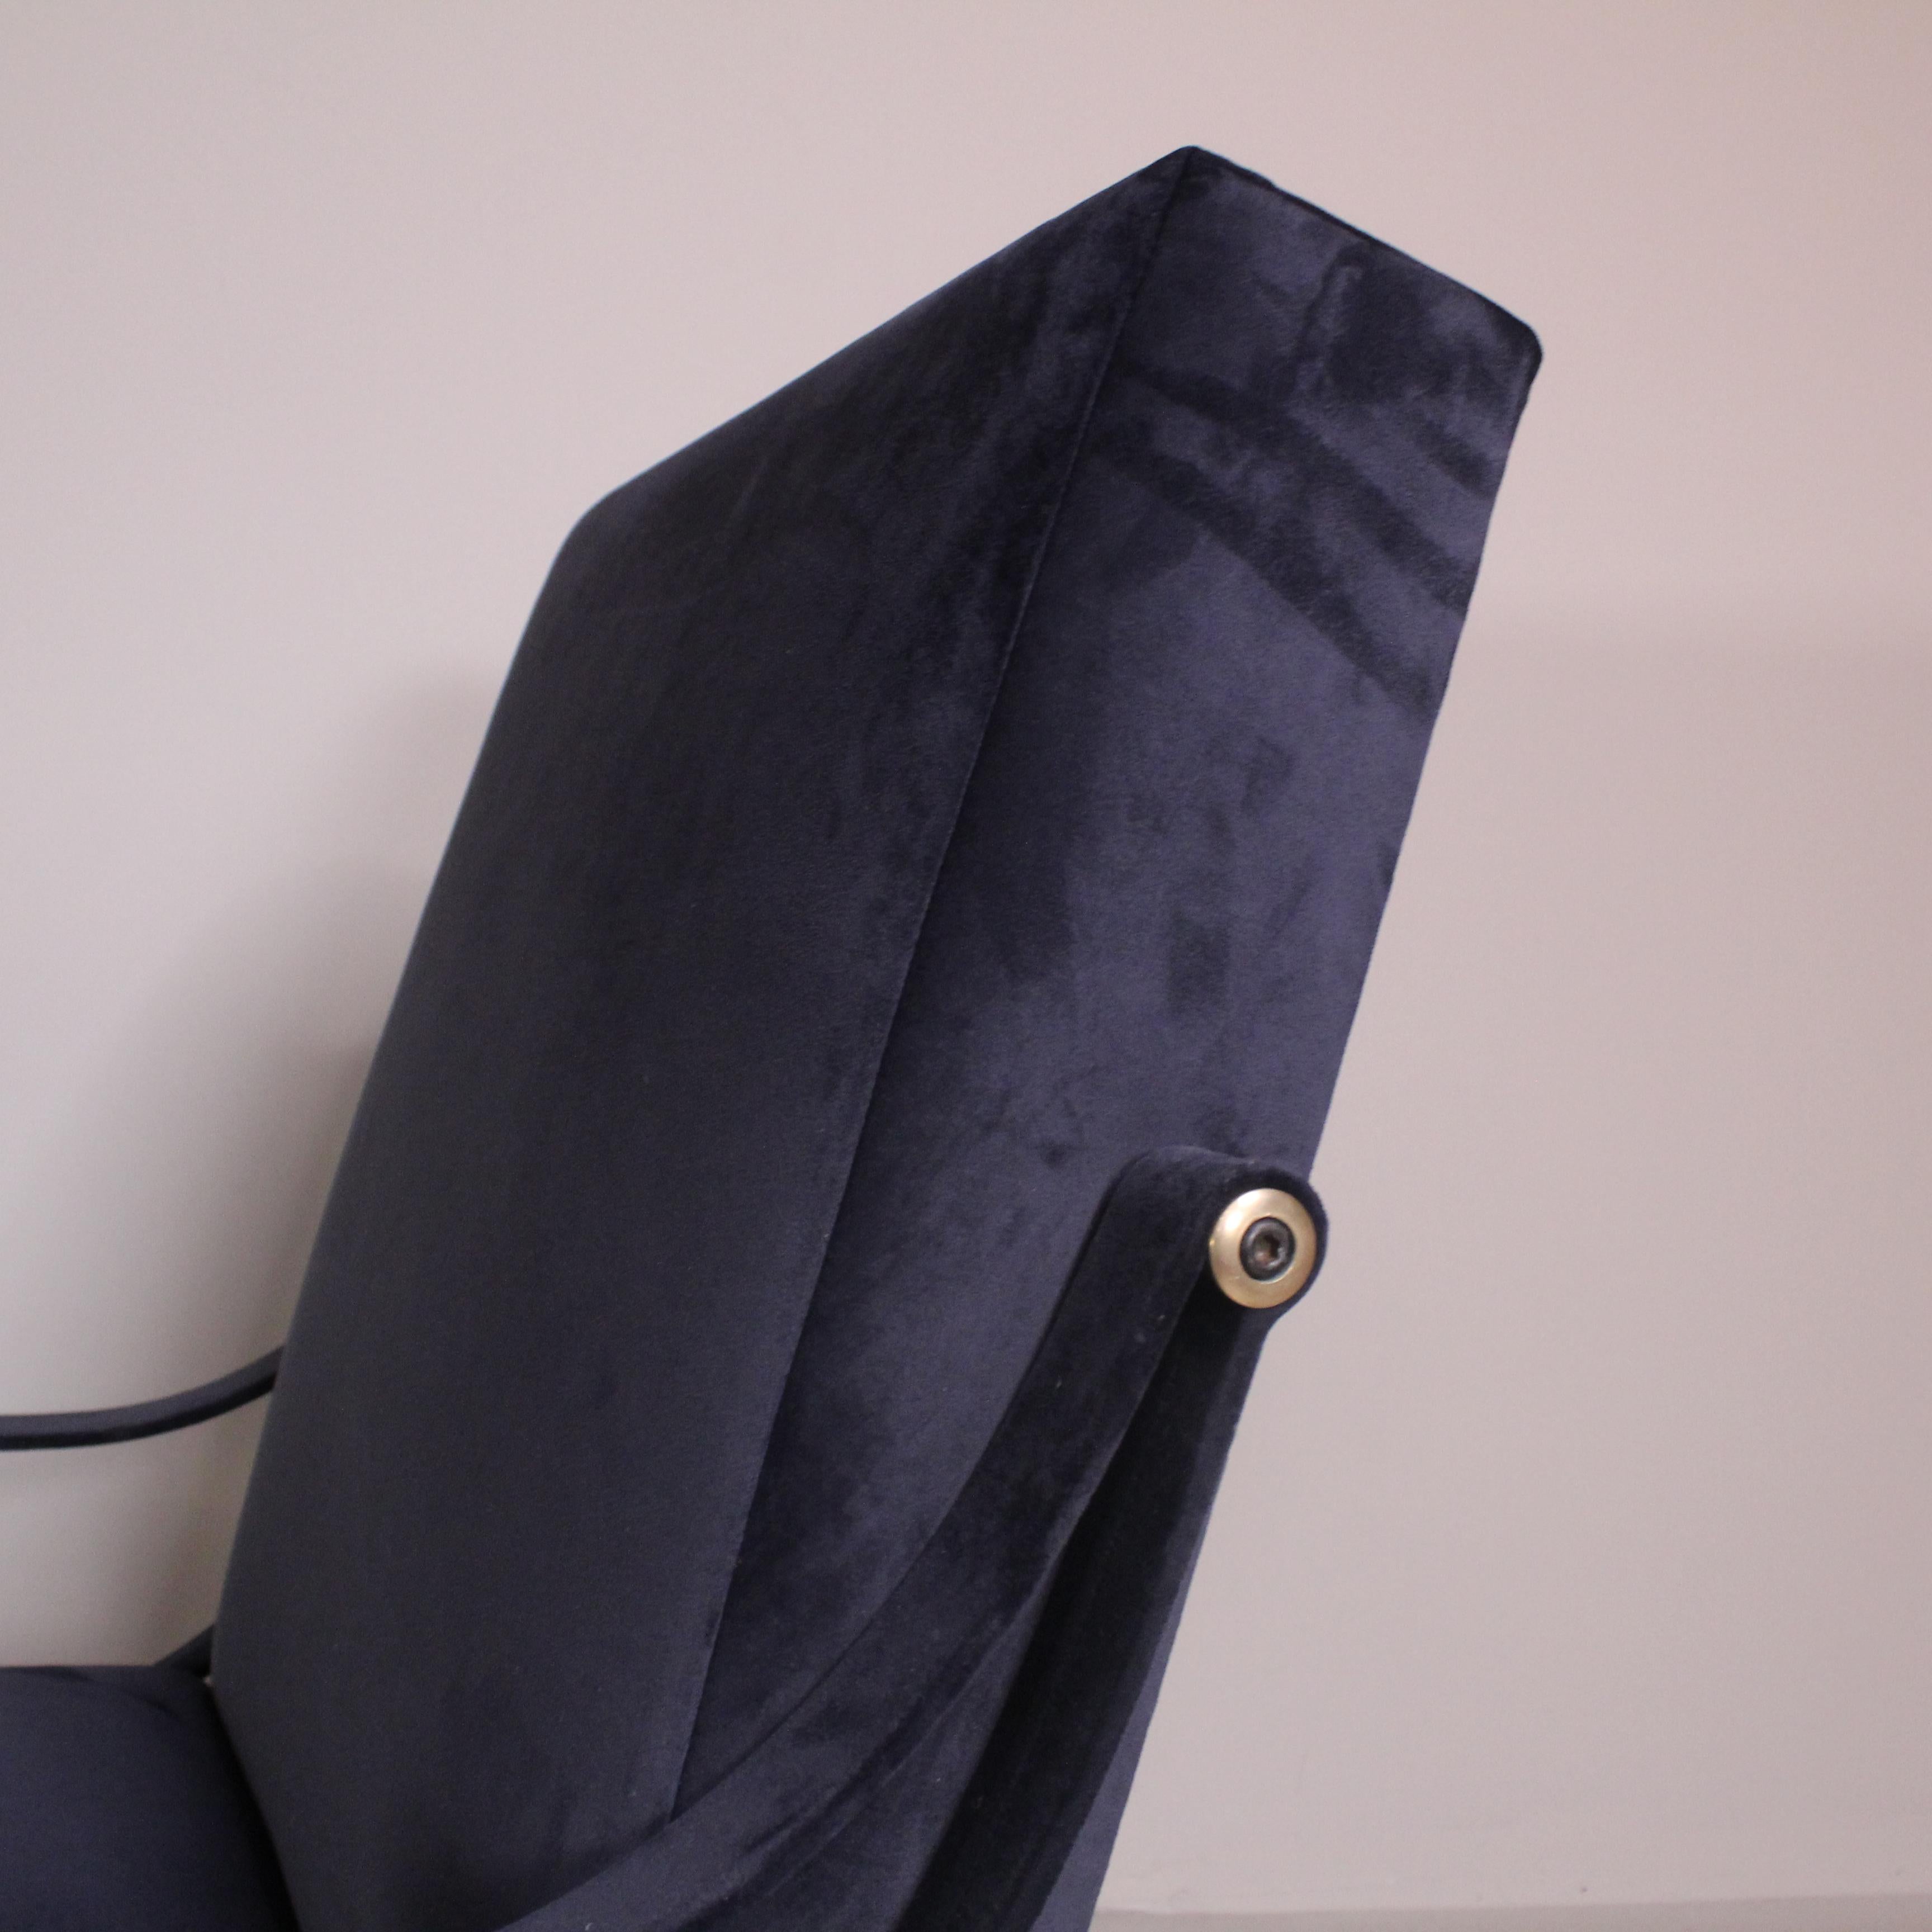 Der 1957 von Ignazio Gardella entworfene Sessel Digamma ist ein bequemer Stuhl, der in der Tradition der späten italienischen Moderne steht.
Seine rationelle Struktur besteht aus zwei geometrischen Teilen - der gepolsterten, rechteckigen Rückenlehne